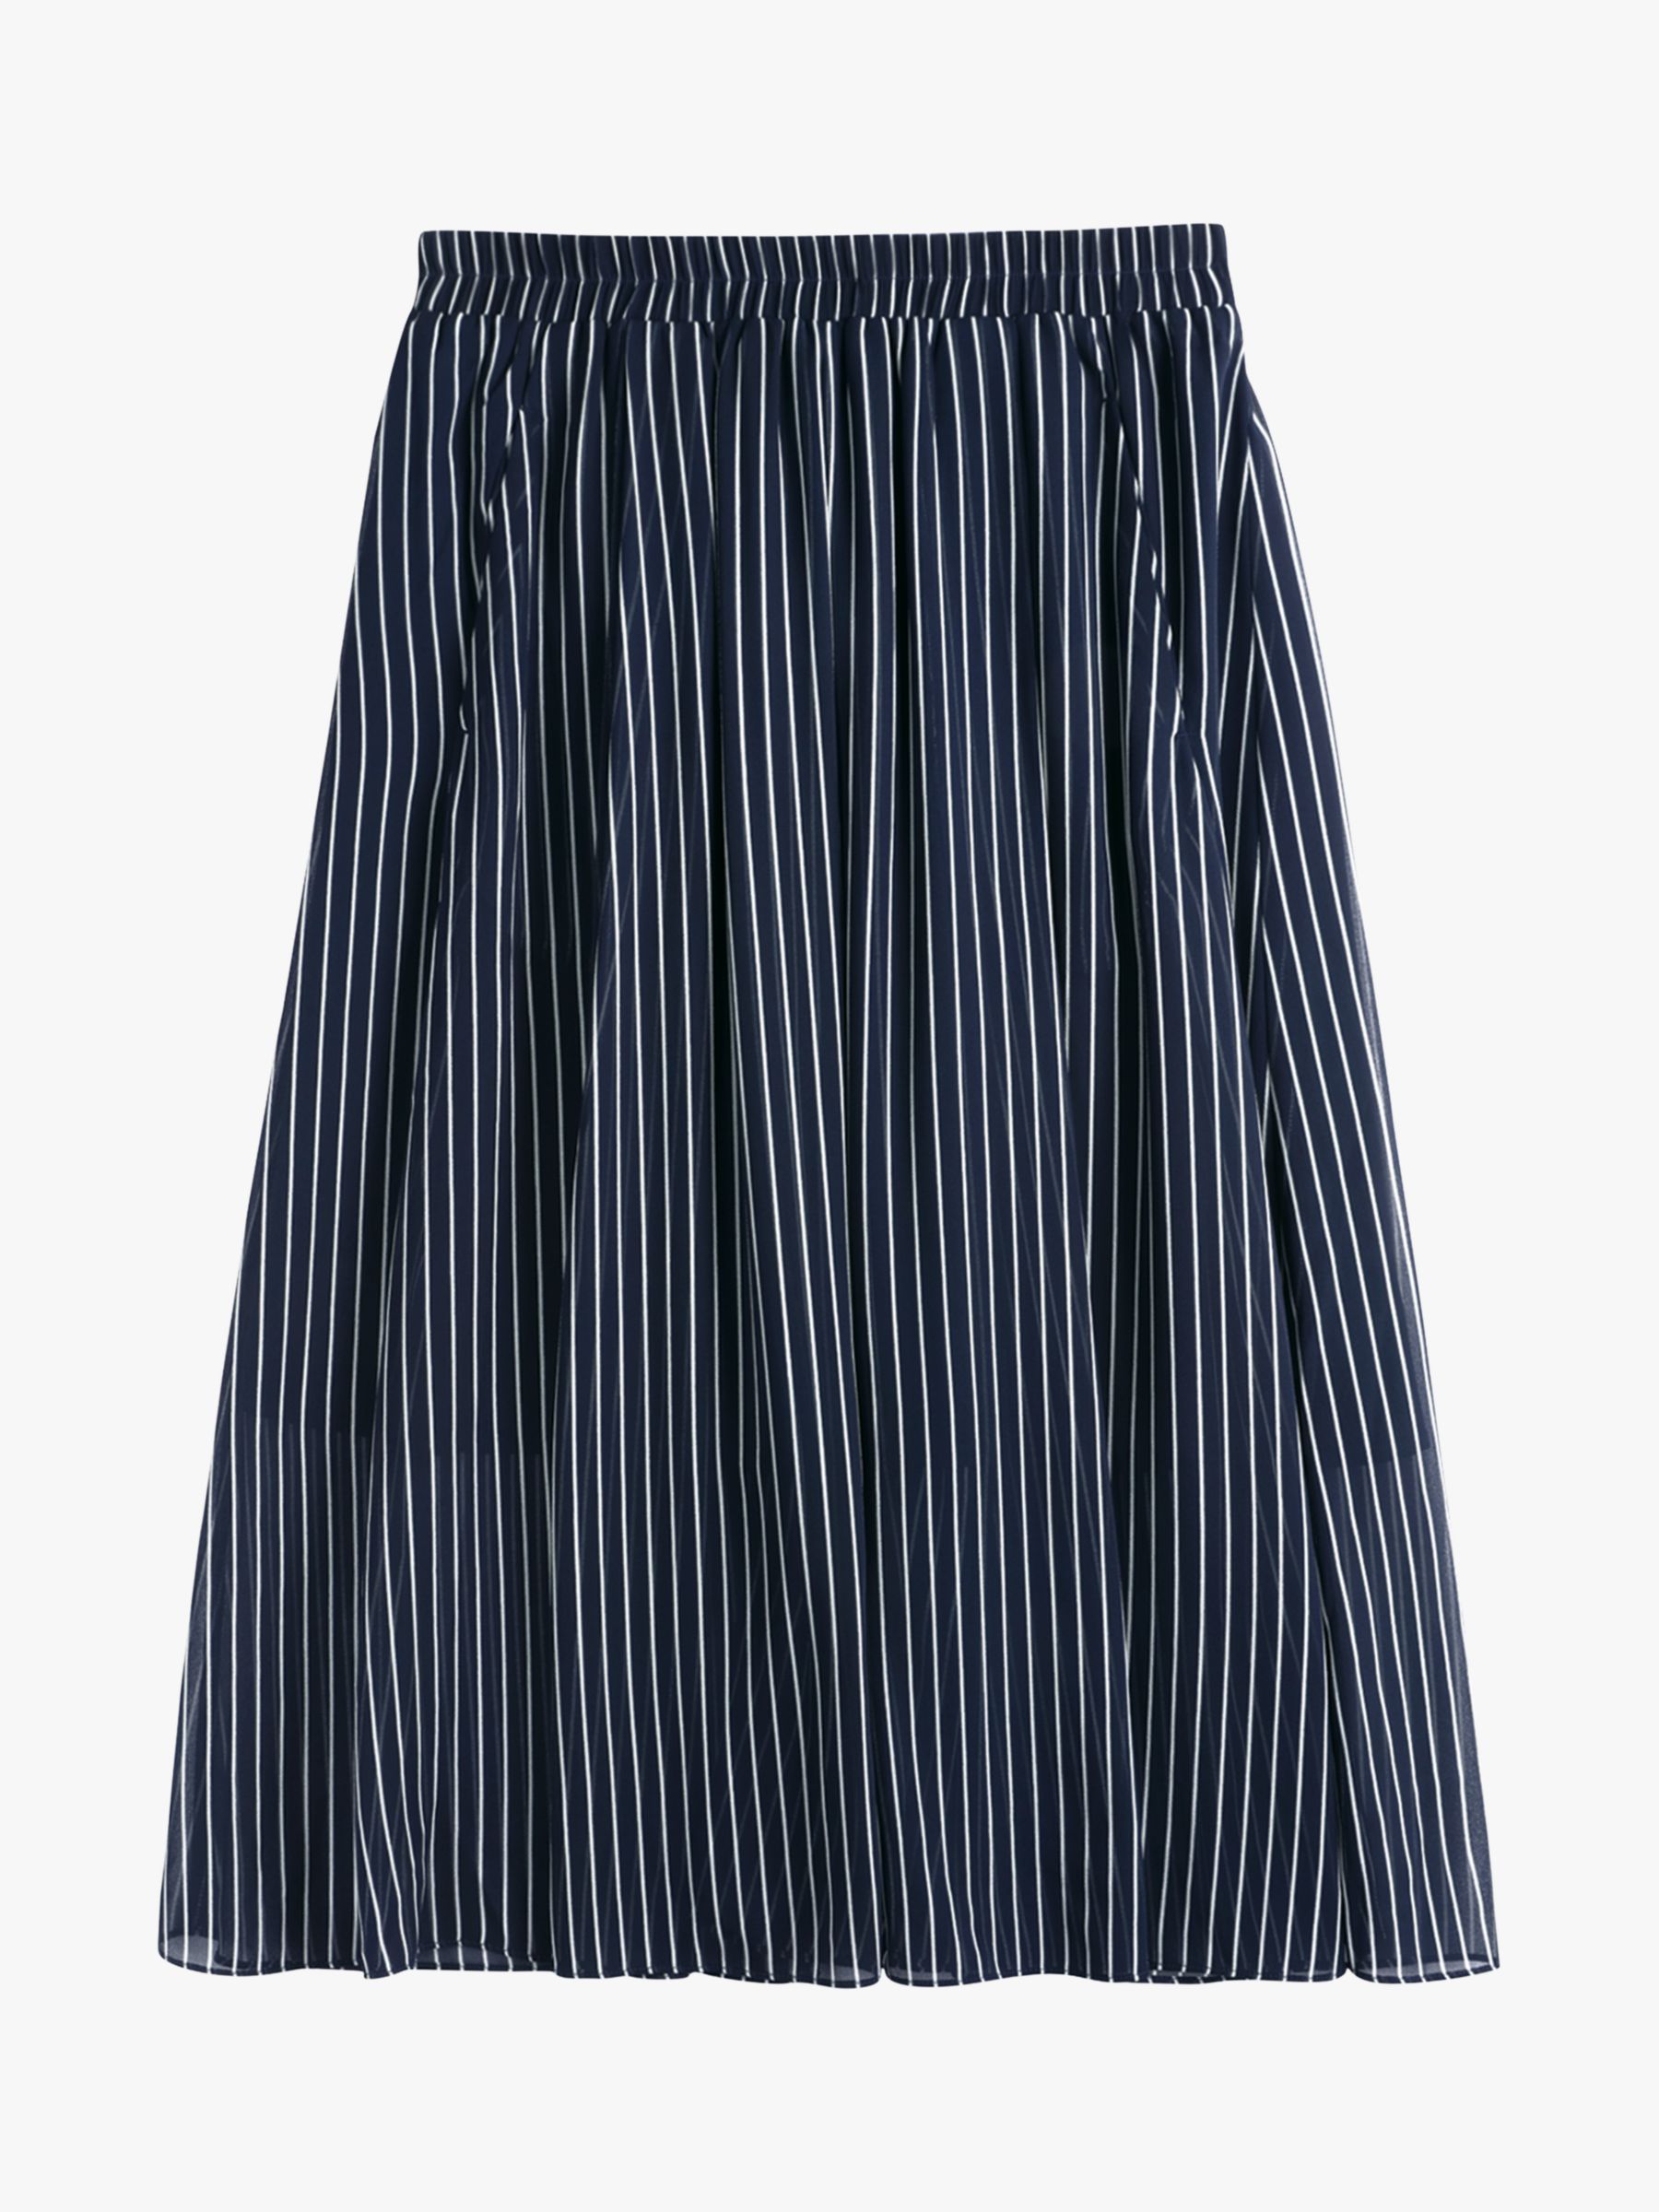 hush Marina Stripe Midi Skirt, Midnight Blue/White